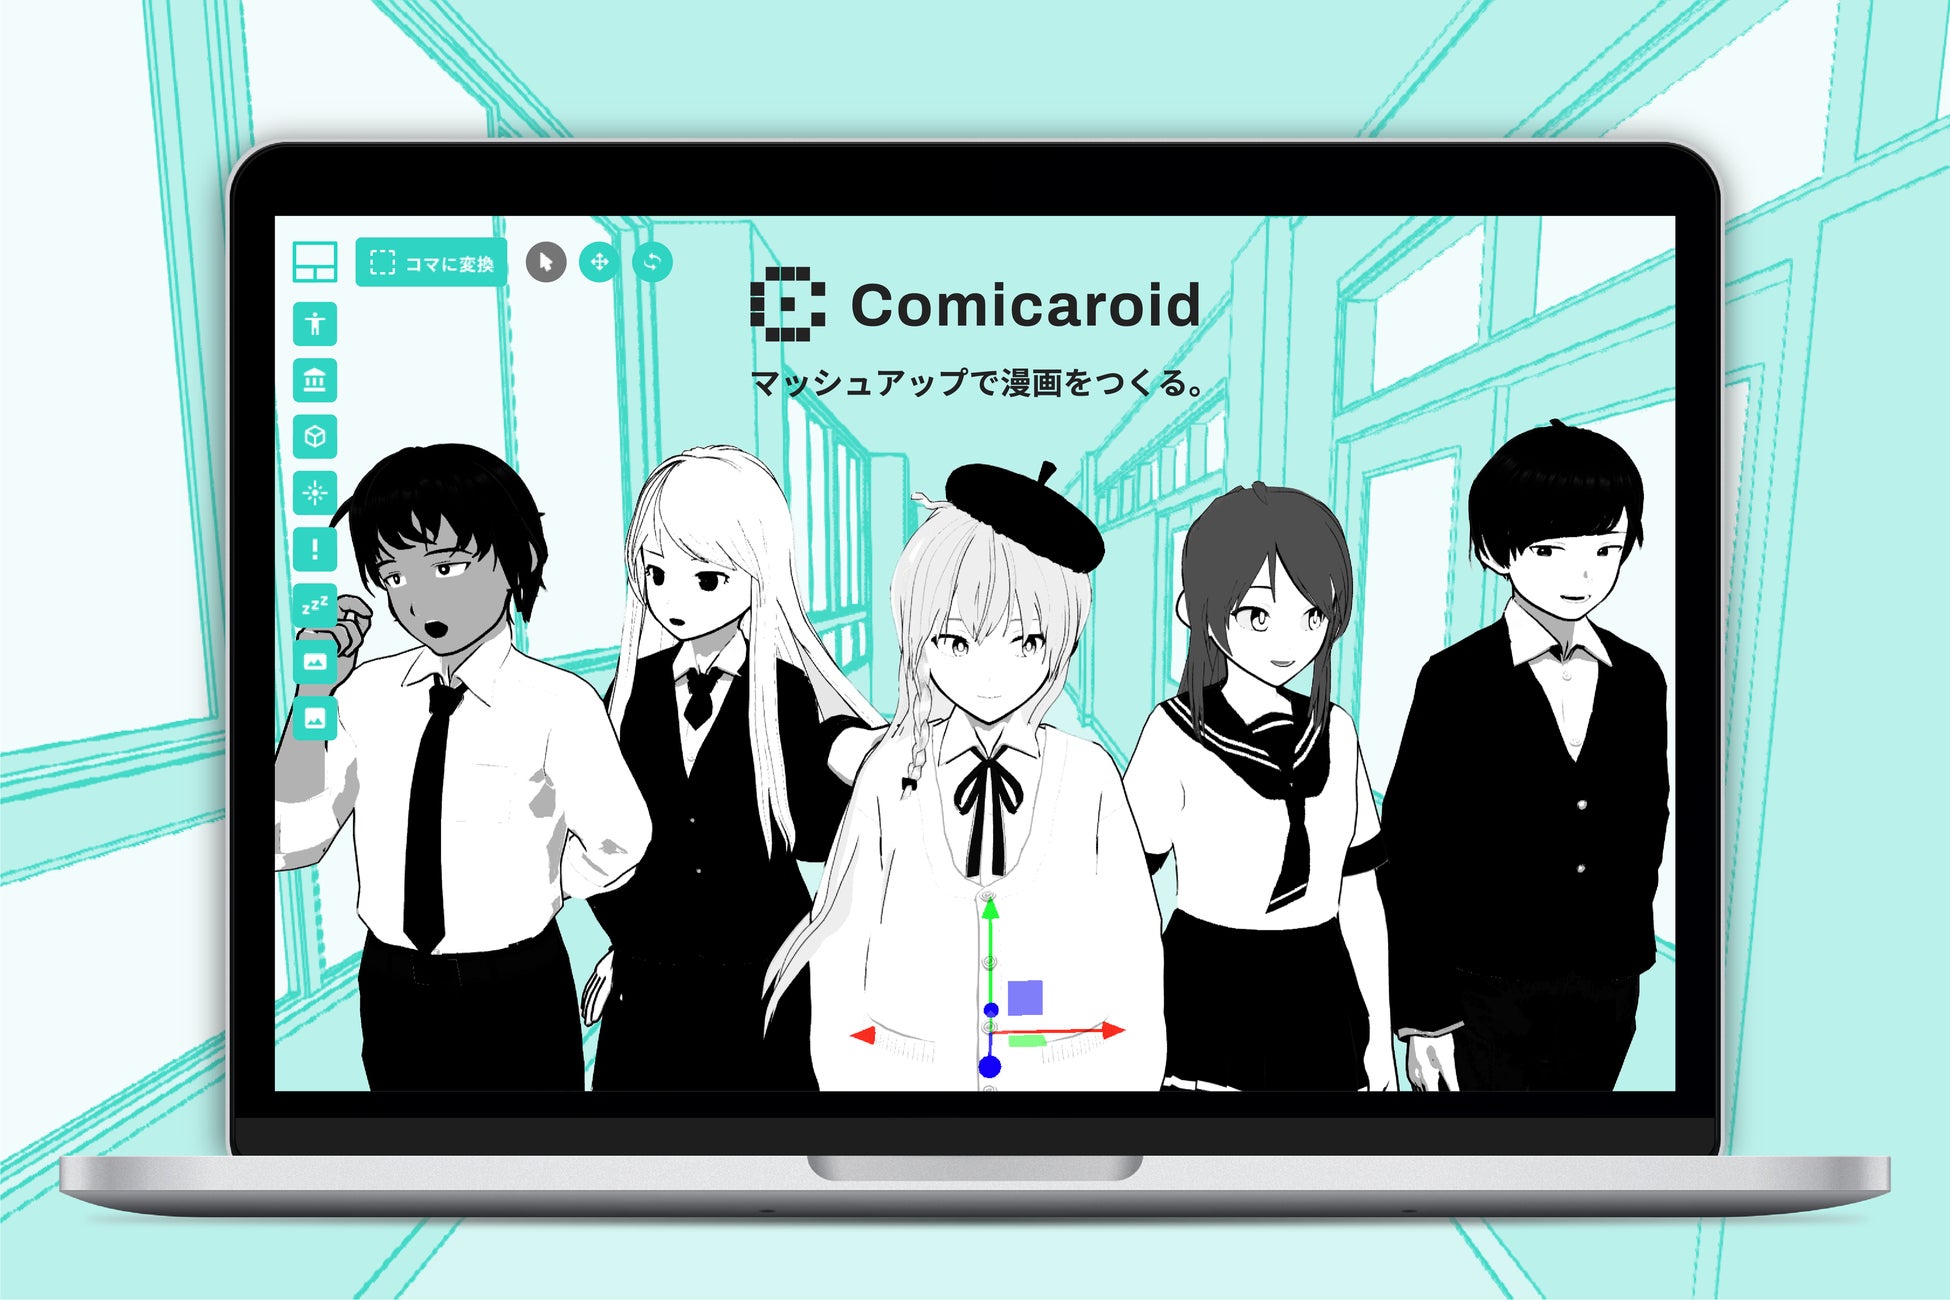 絵心いらずで漫画家になれる新ツールComicaroid(コミカロイド) β 12/27(火)から無料公開！世界中のデータを組み合わせて漫画をつくろう！